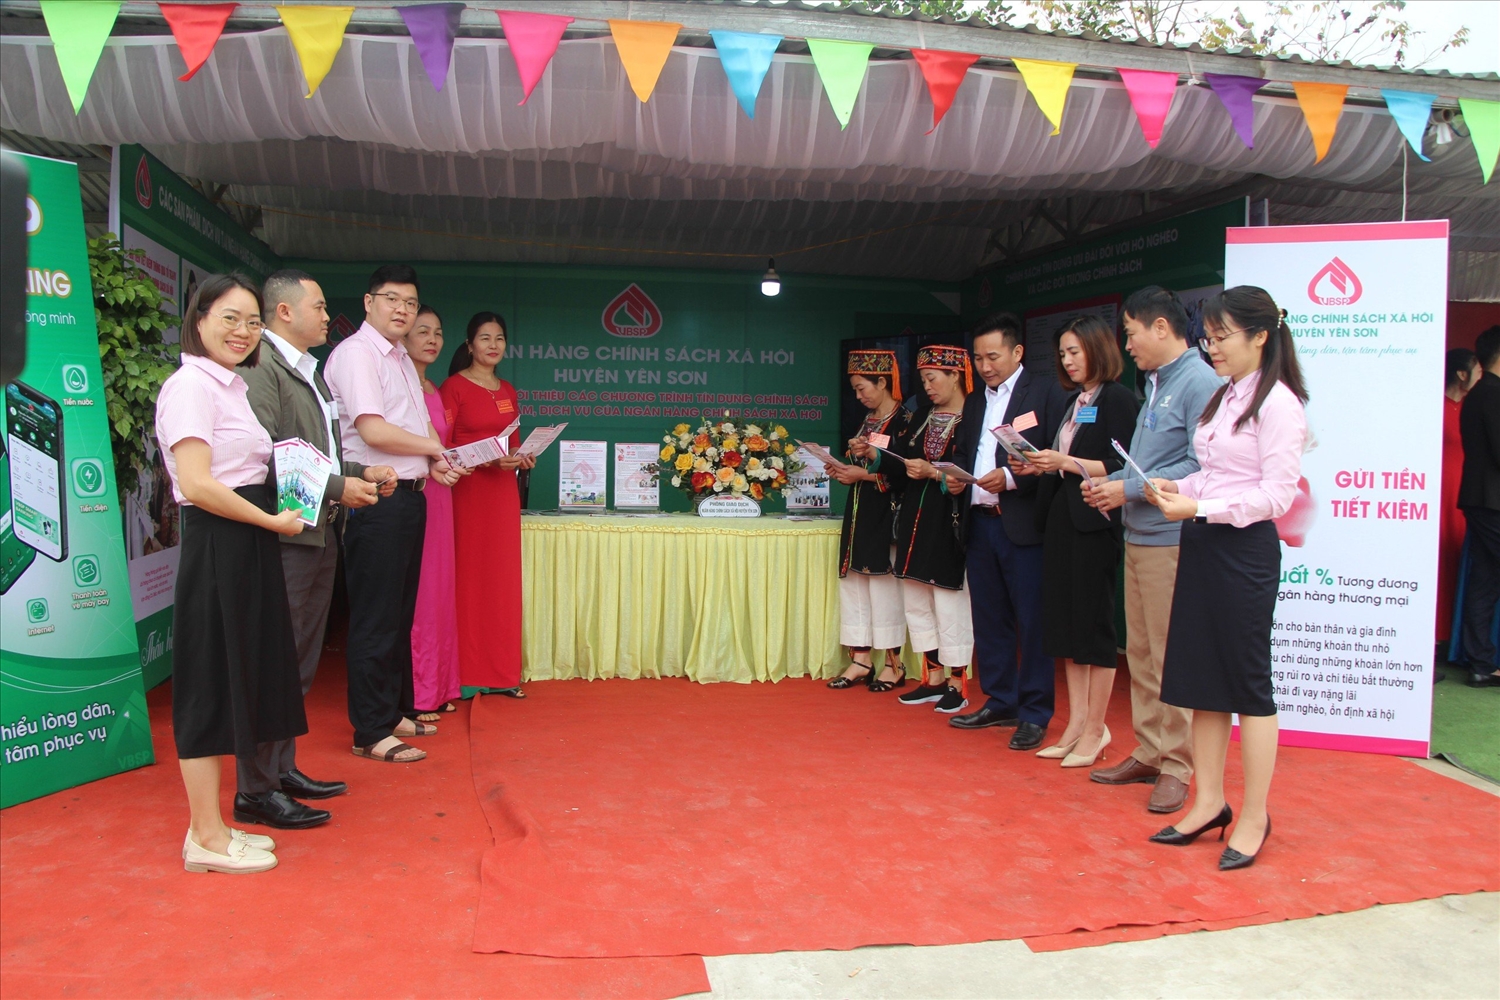 Phòng Giao dịch Ngân hàng CSXH huyện Yên Sơn triển khai thực hiện nhiều chương trình tín dụng chính sách với nhiều mục tiêu khác nhau nhằm đáp ứng nhu cầu vay vốn của người dân